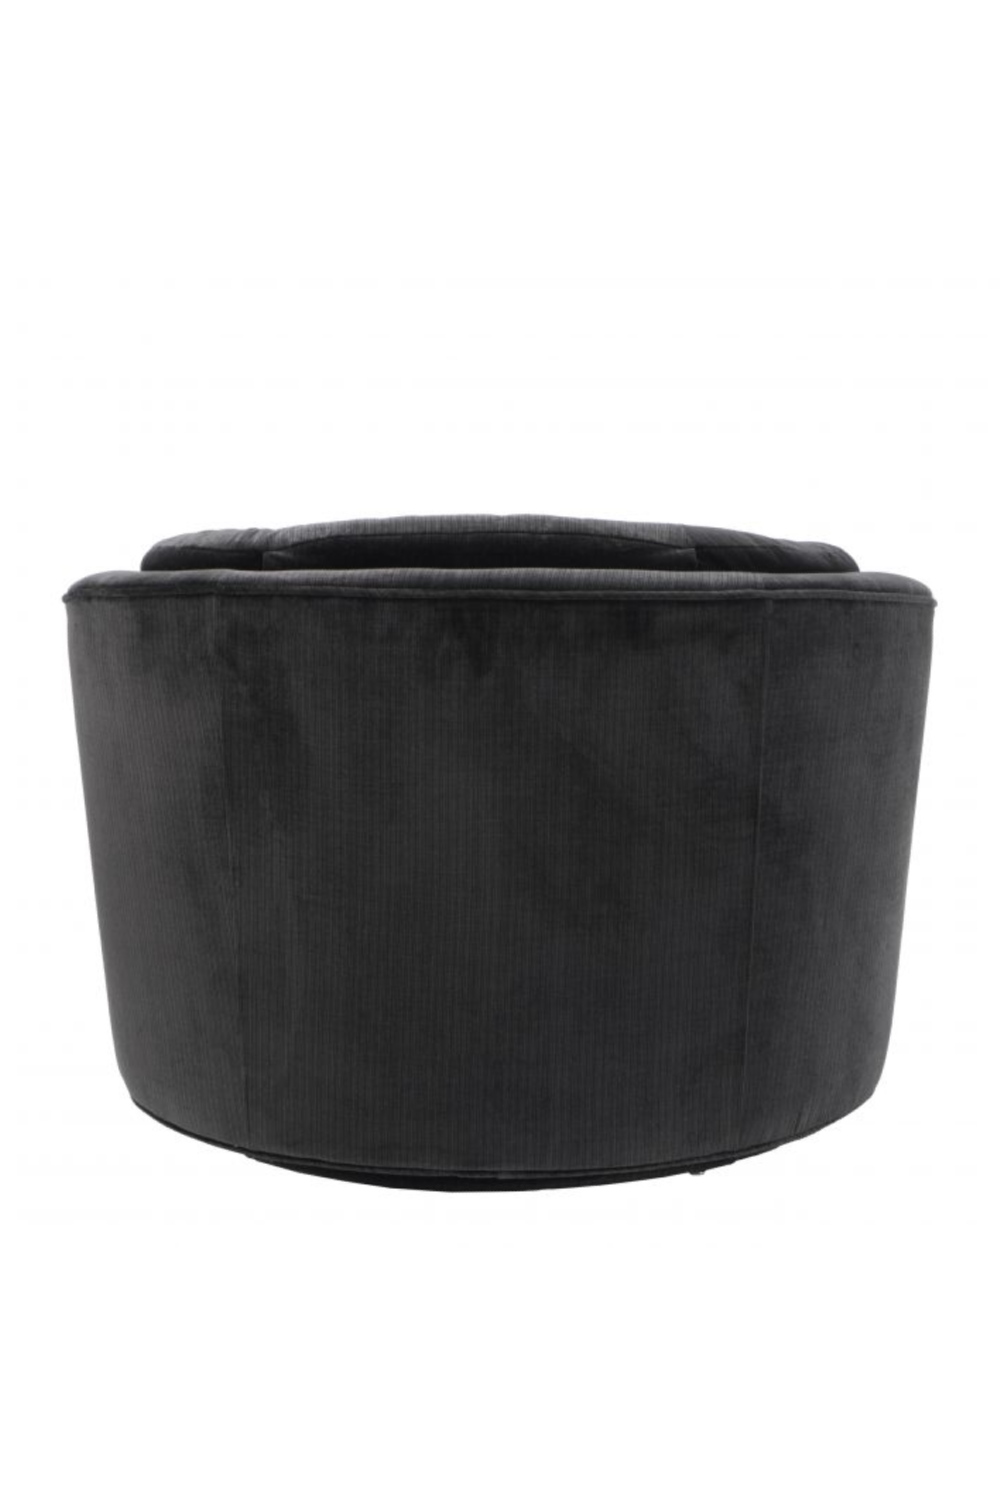 Black Velvet Swivel Chair | Eichholtz Recla | Oroa.com